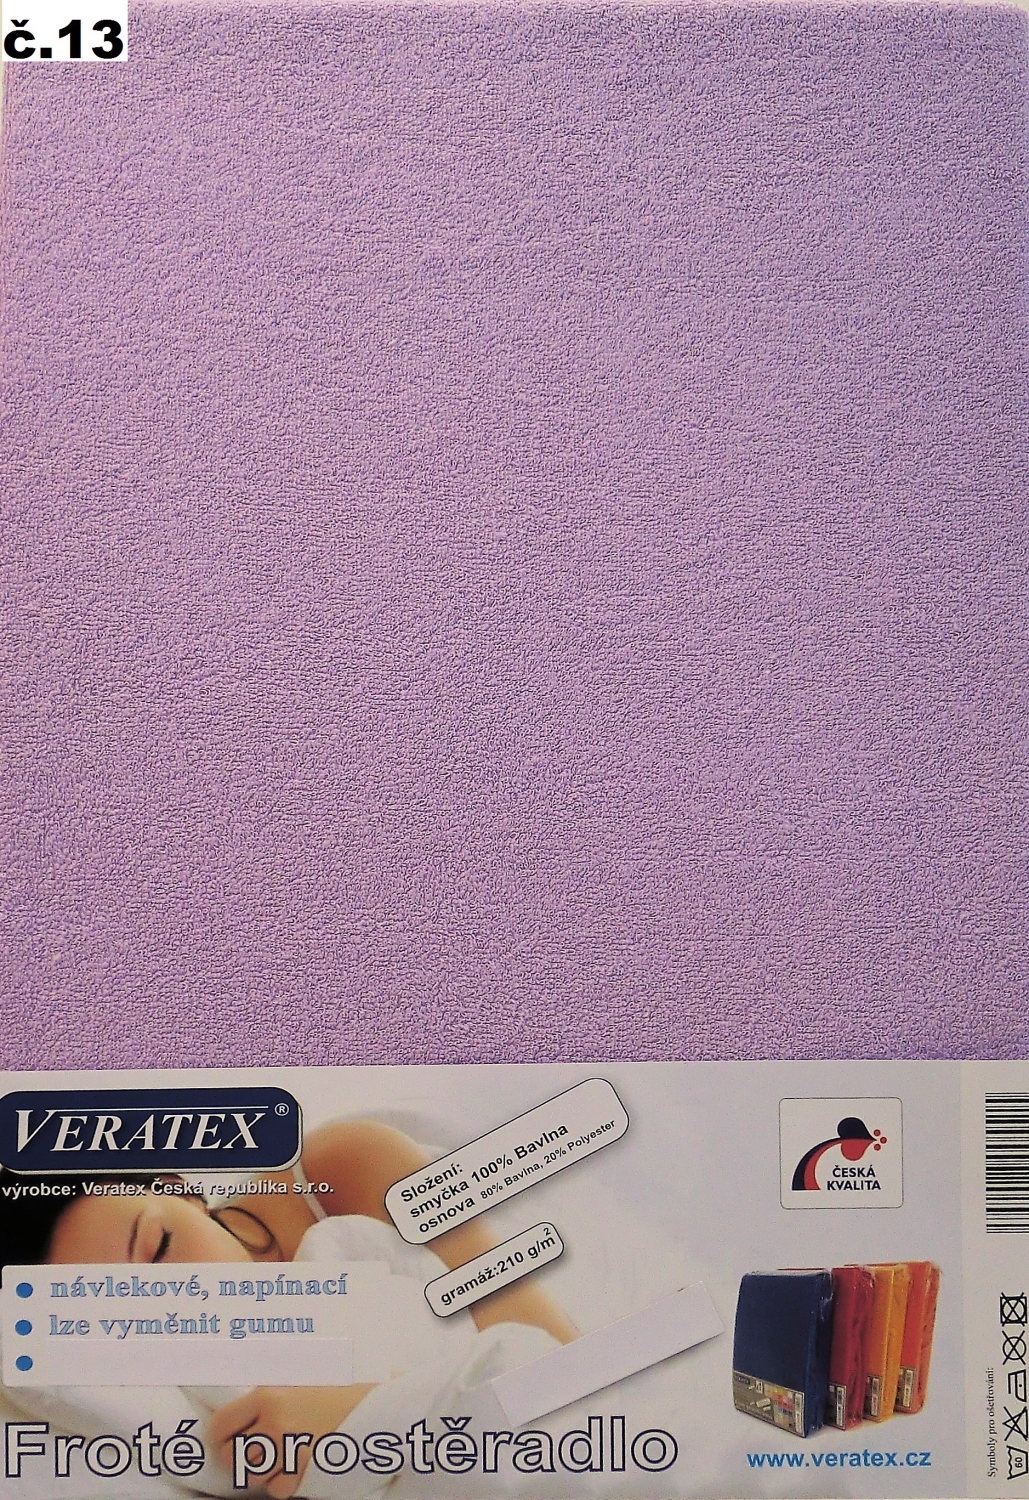 Veratex Froté prostěradlo 140x200 cm (č.13-fialková)